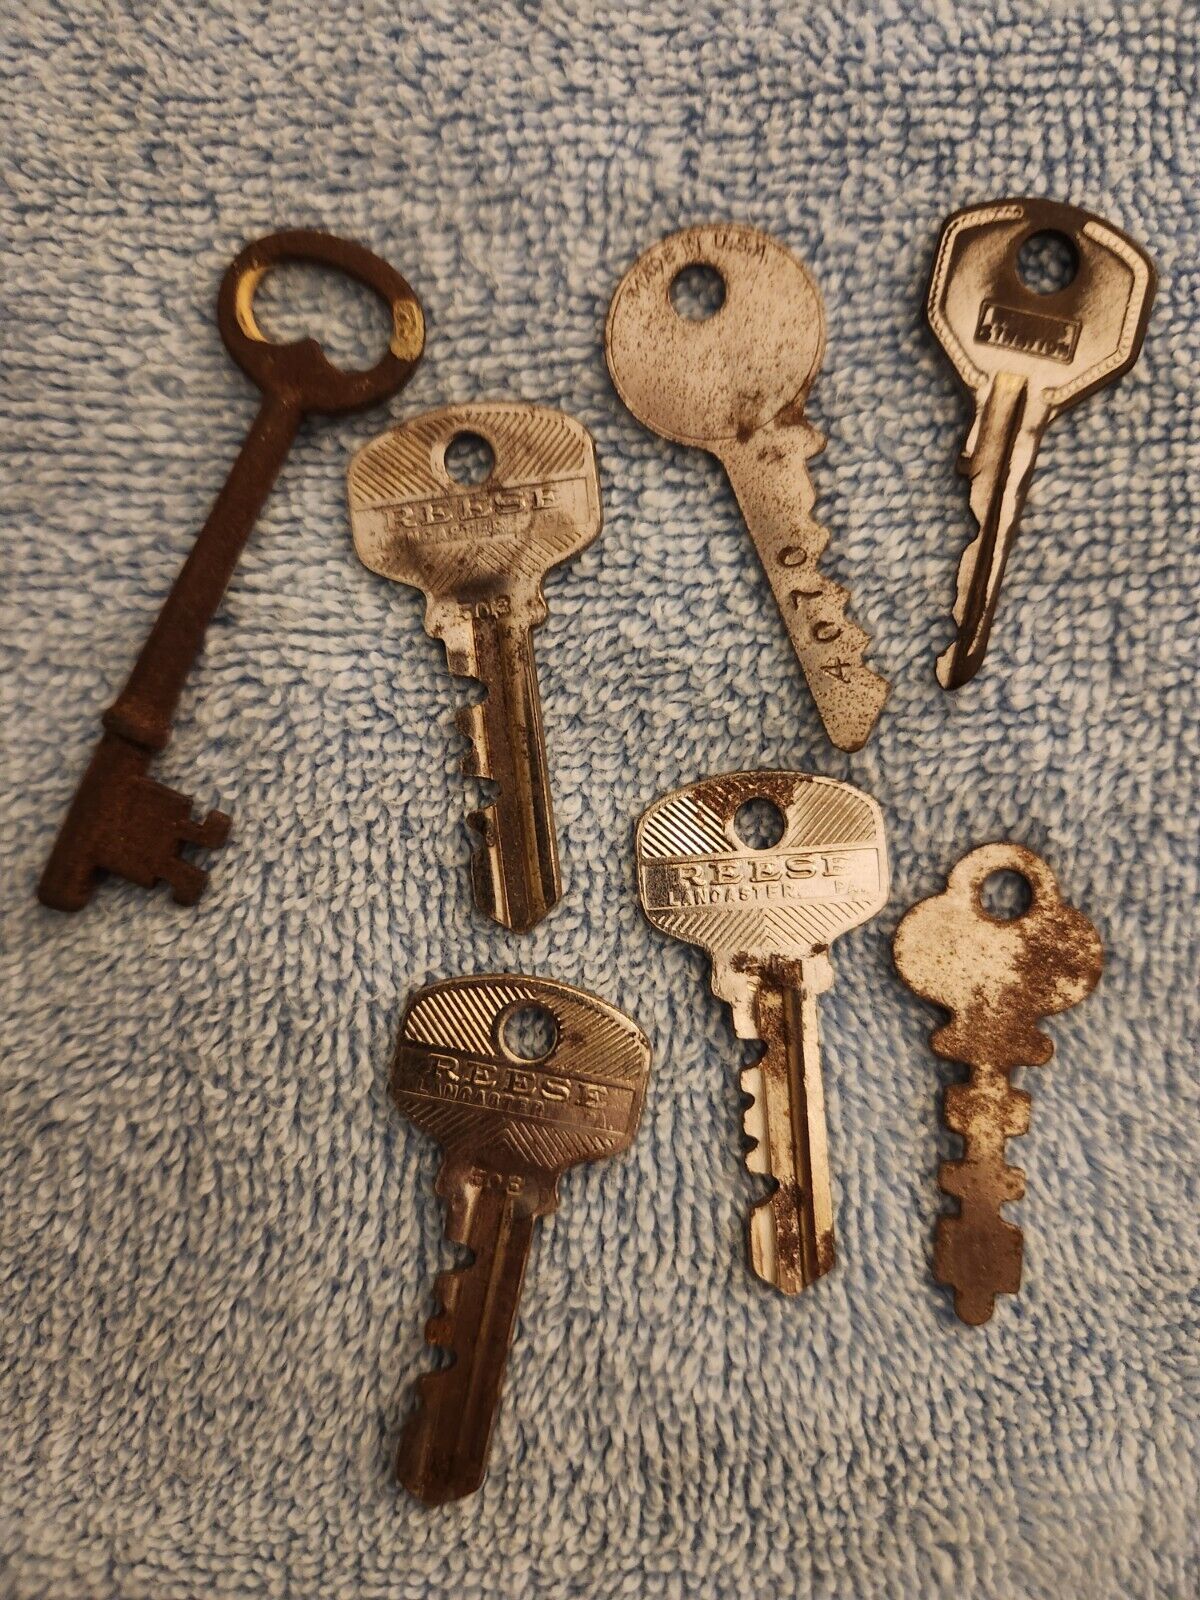 Vintage Keys Small Lot Old Vintage Antique Skeleton Key Rusted